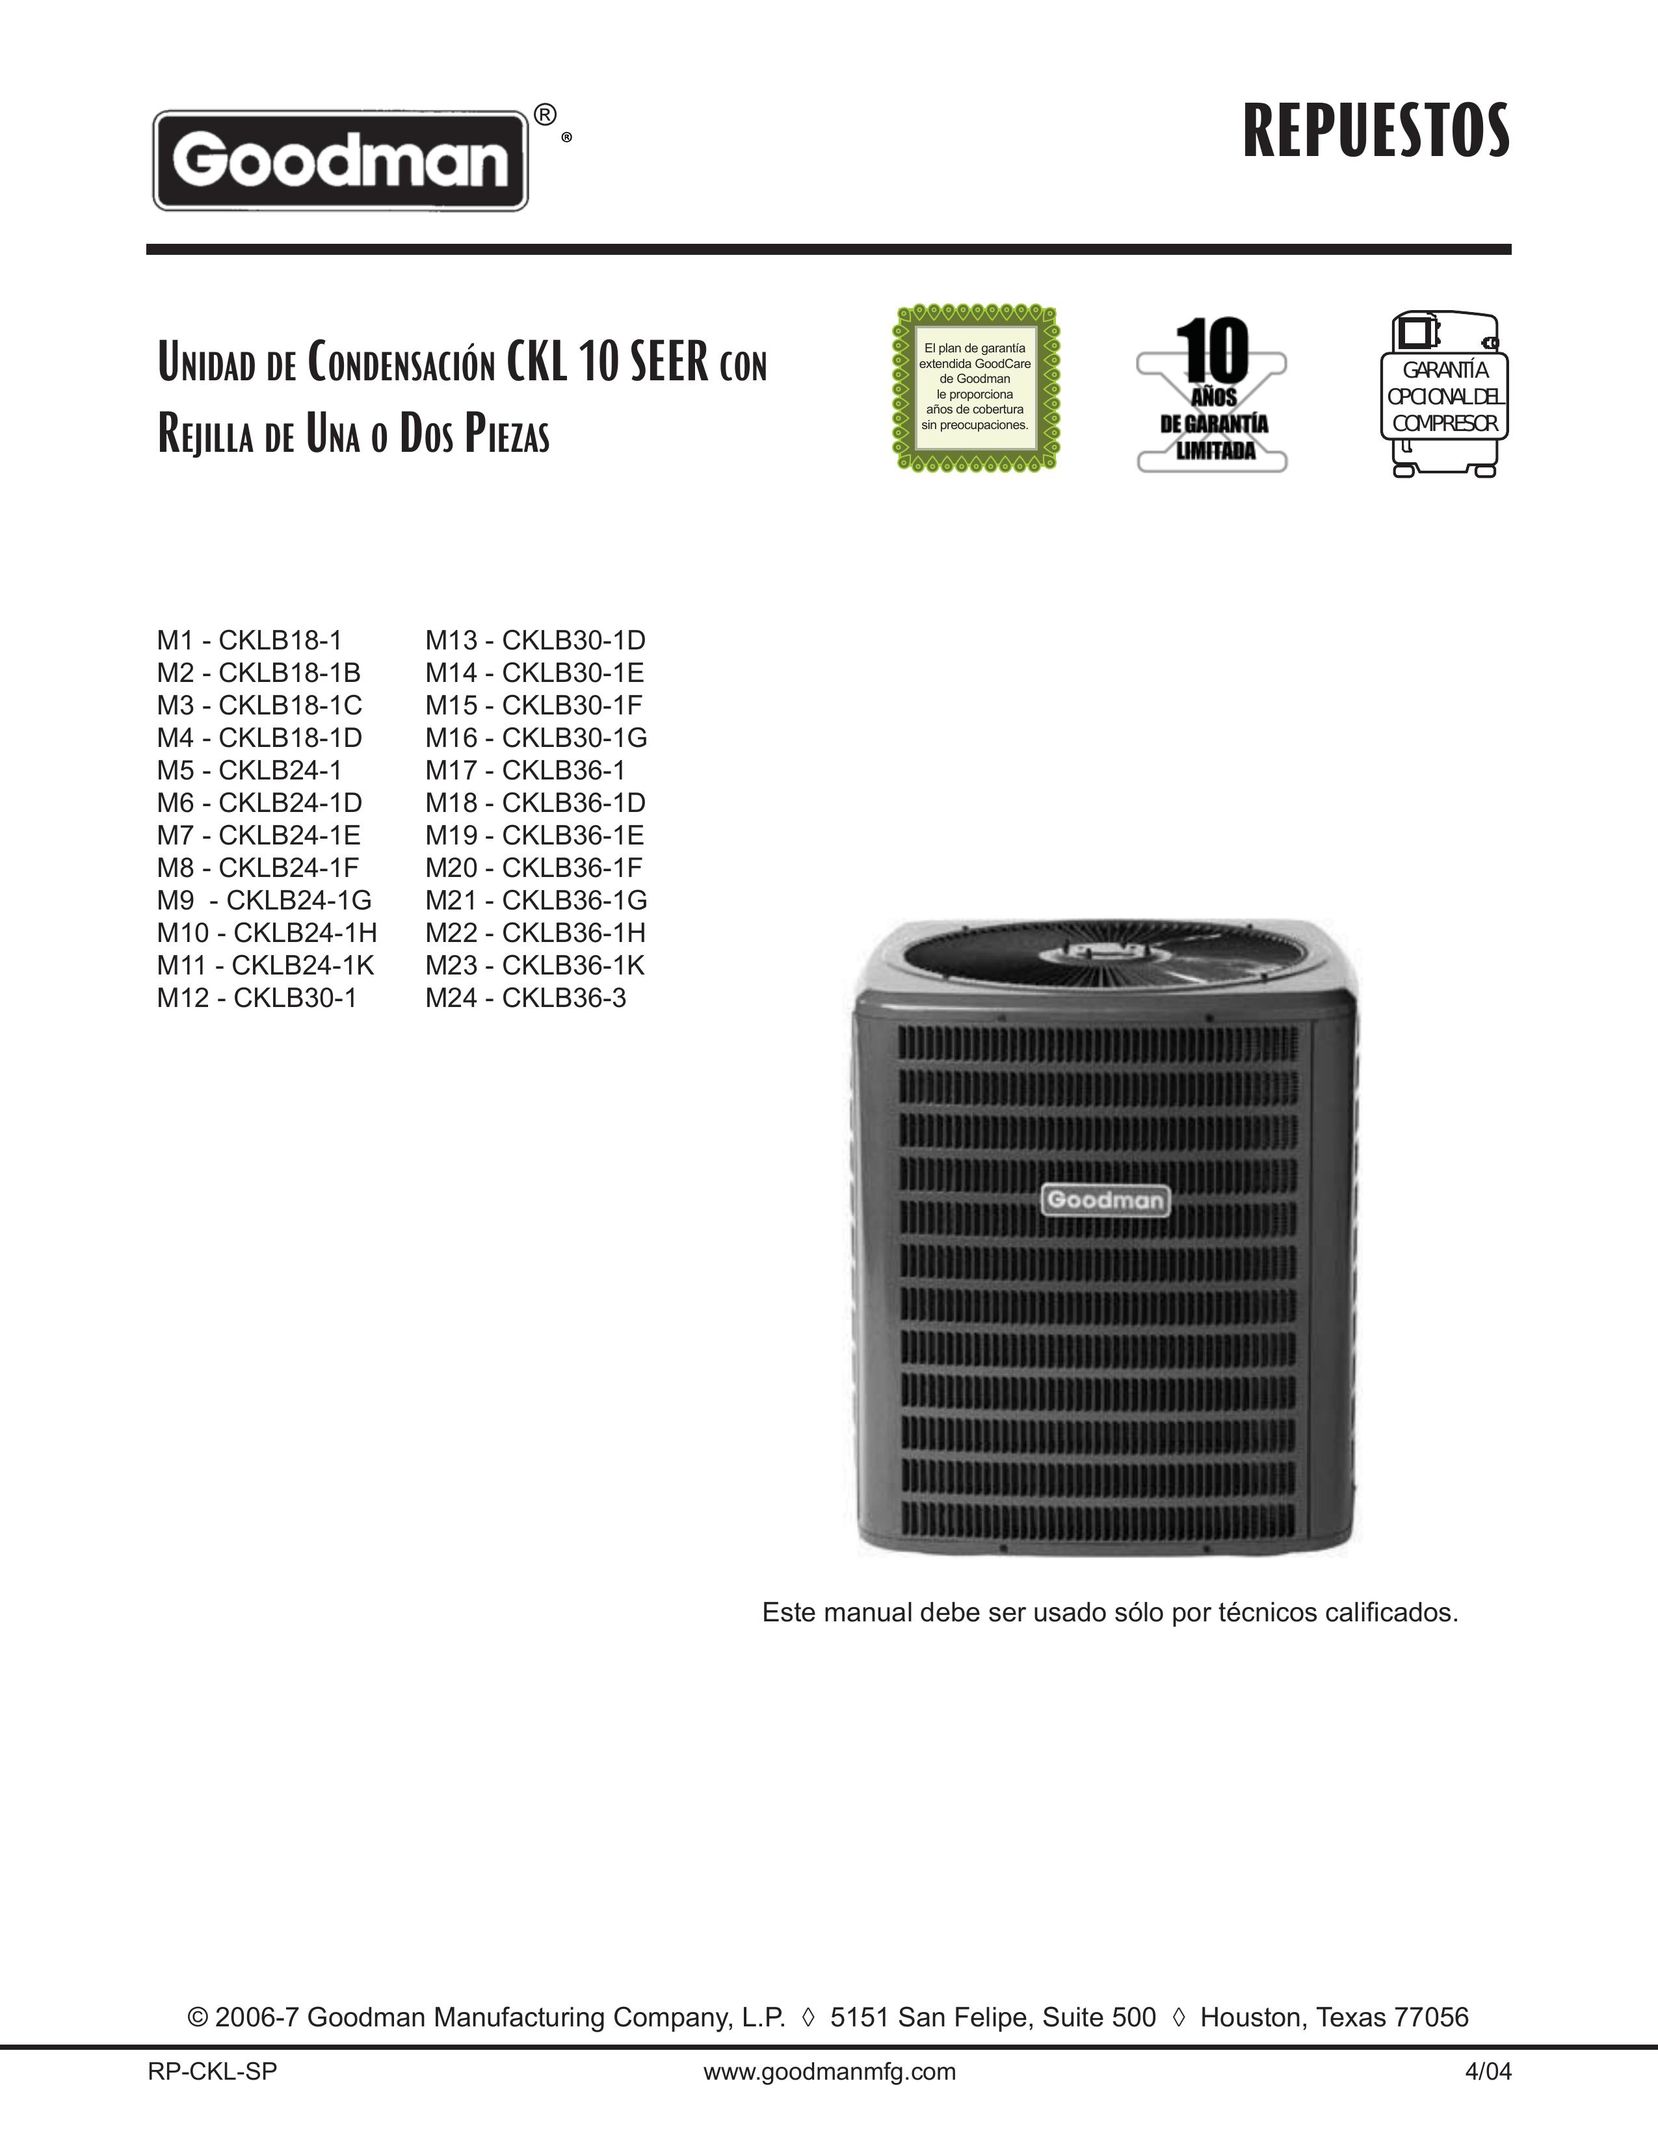 Goodman Mfg CKLB30-1F Air Conditioner User Manual